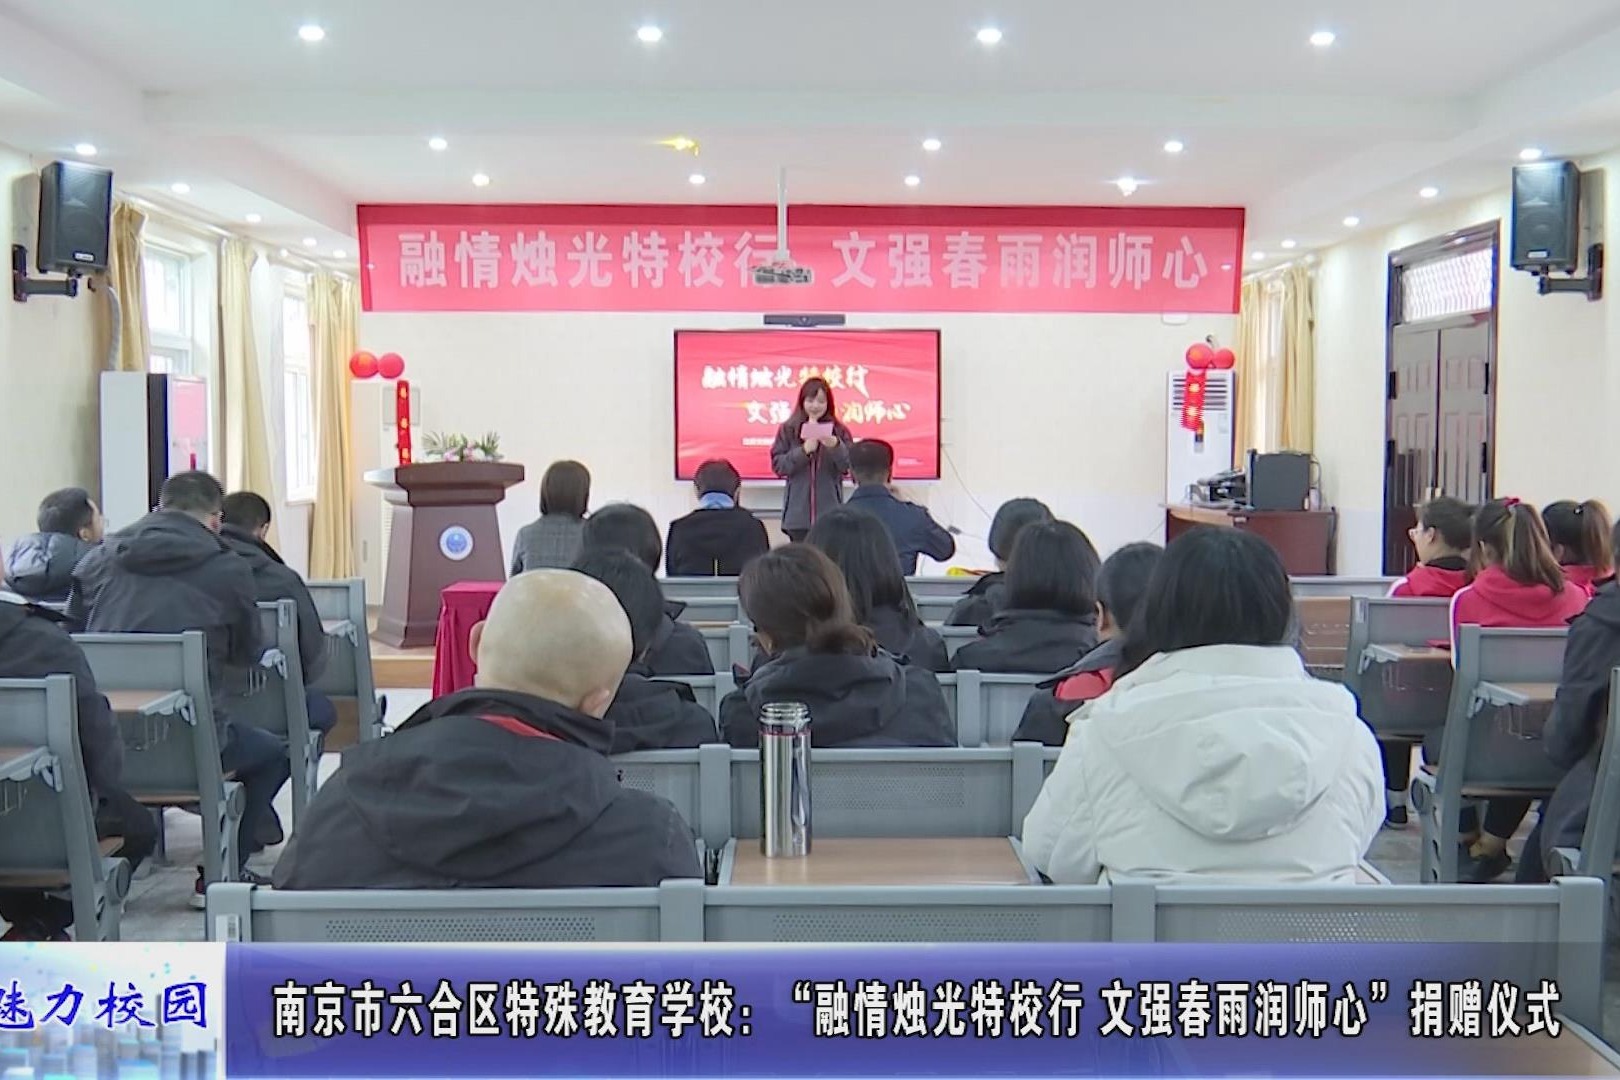 动态丨南京市六合区特殊教育学校:捐赠仪式